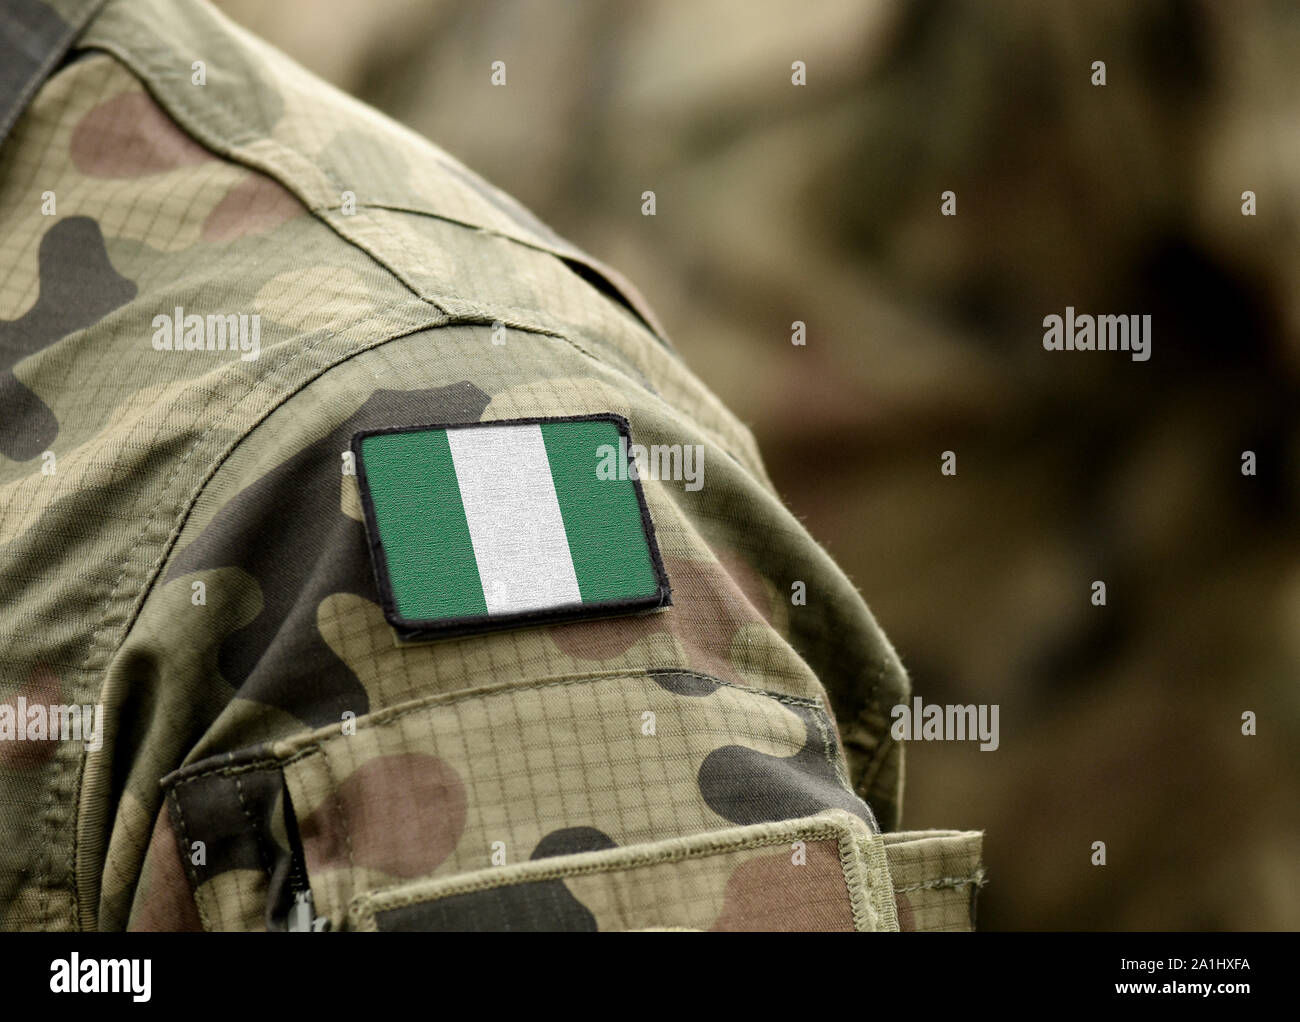 Pavillon du Nigeria sur l'uniforme militaire. Armée, soldats, Afrique (collage). Banque D'Images